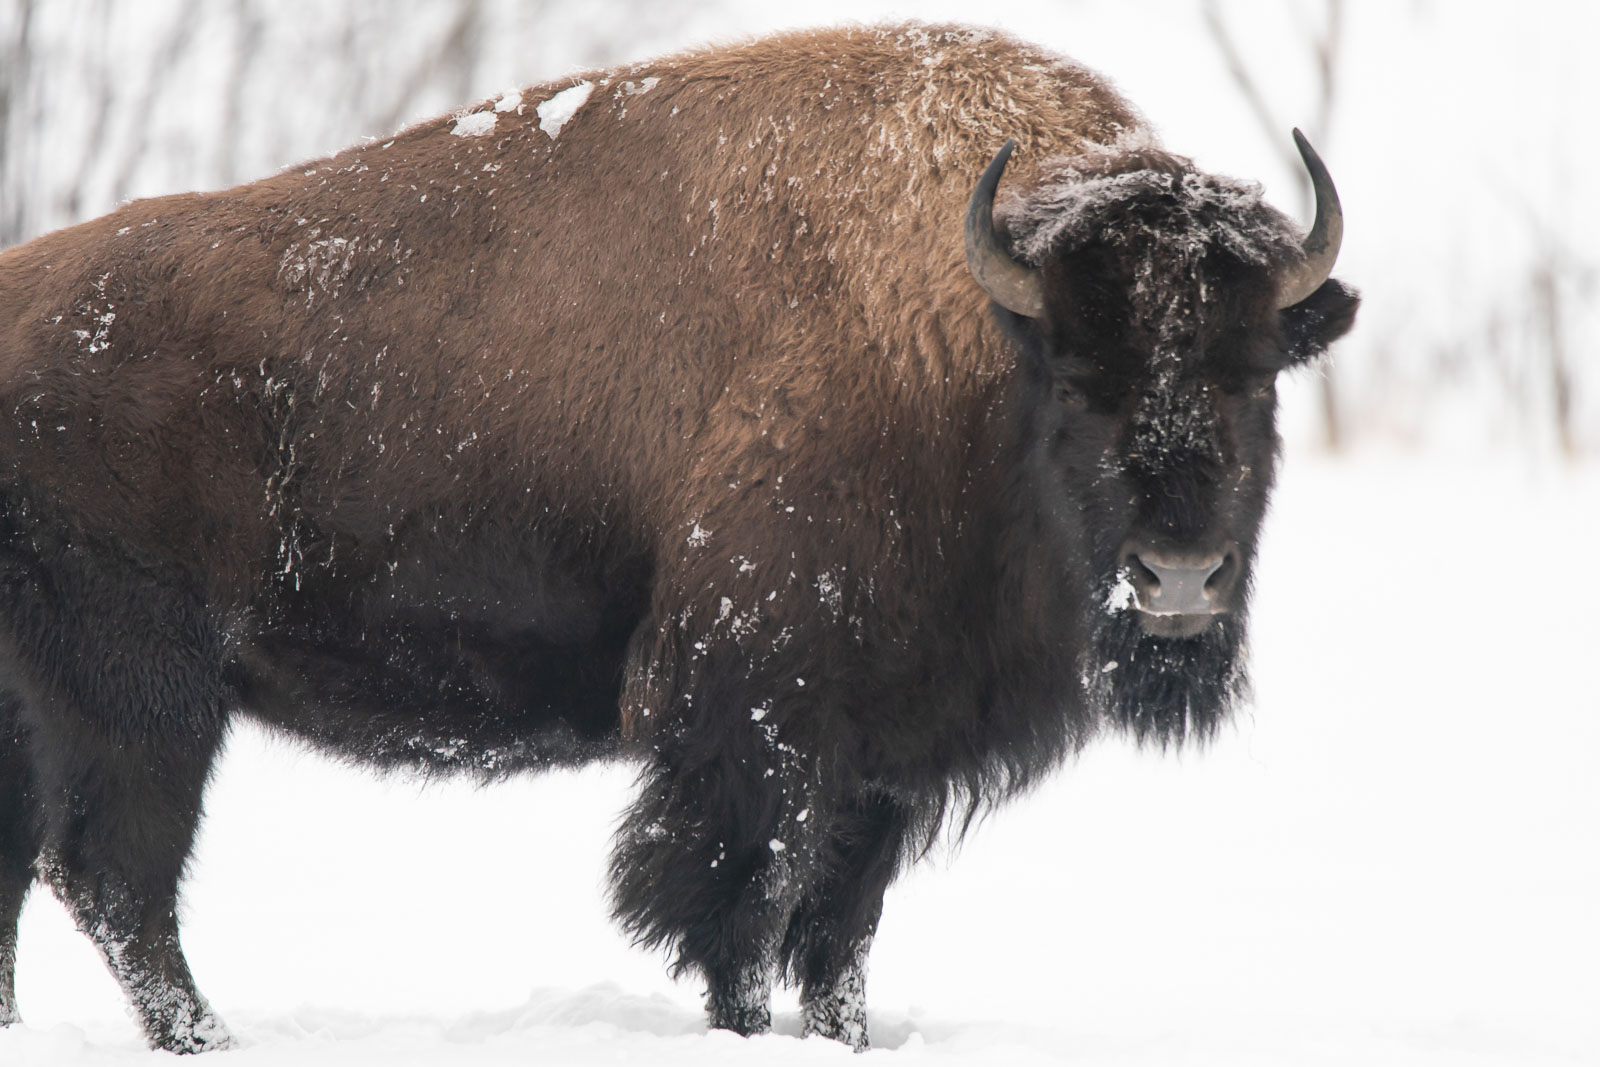 buffalo in winter in edmonton's elk island